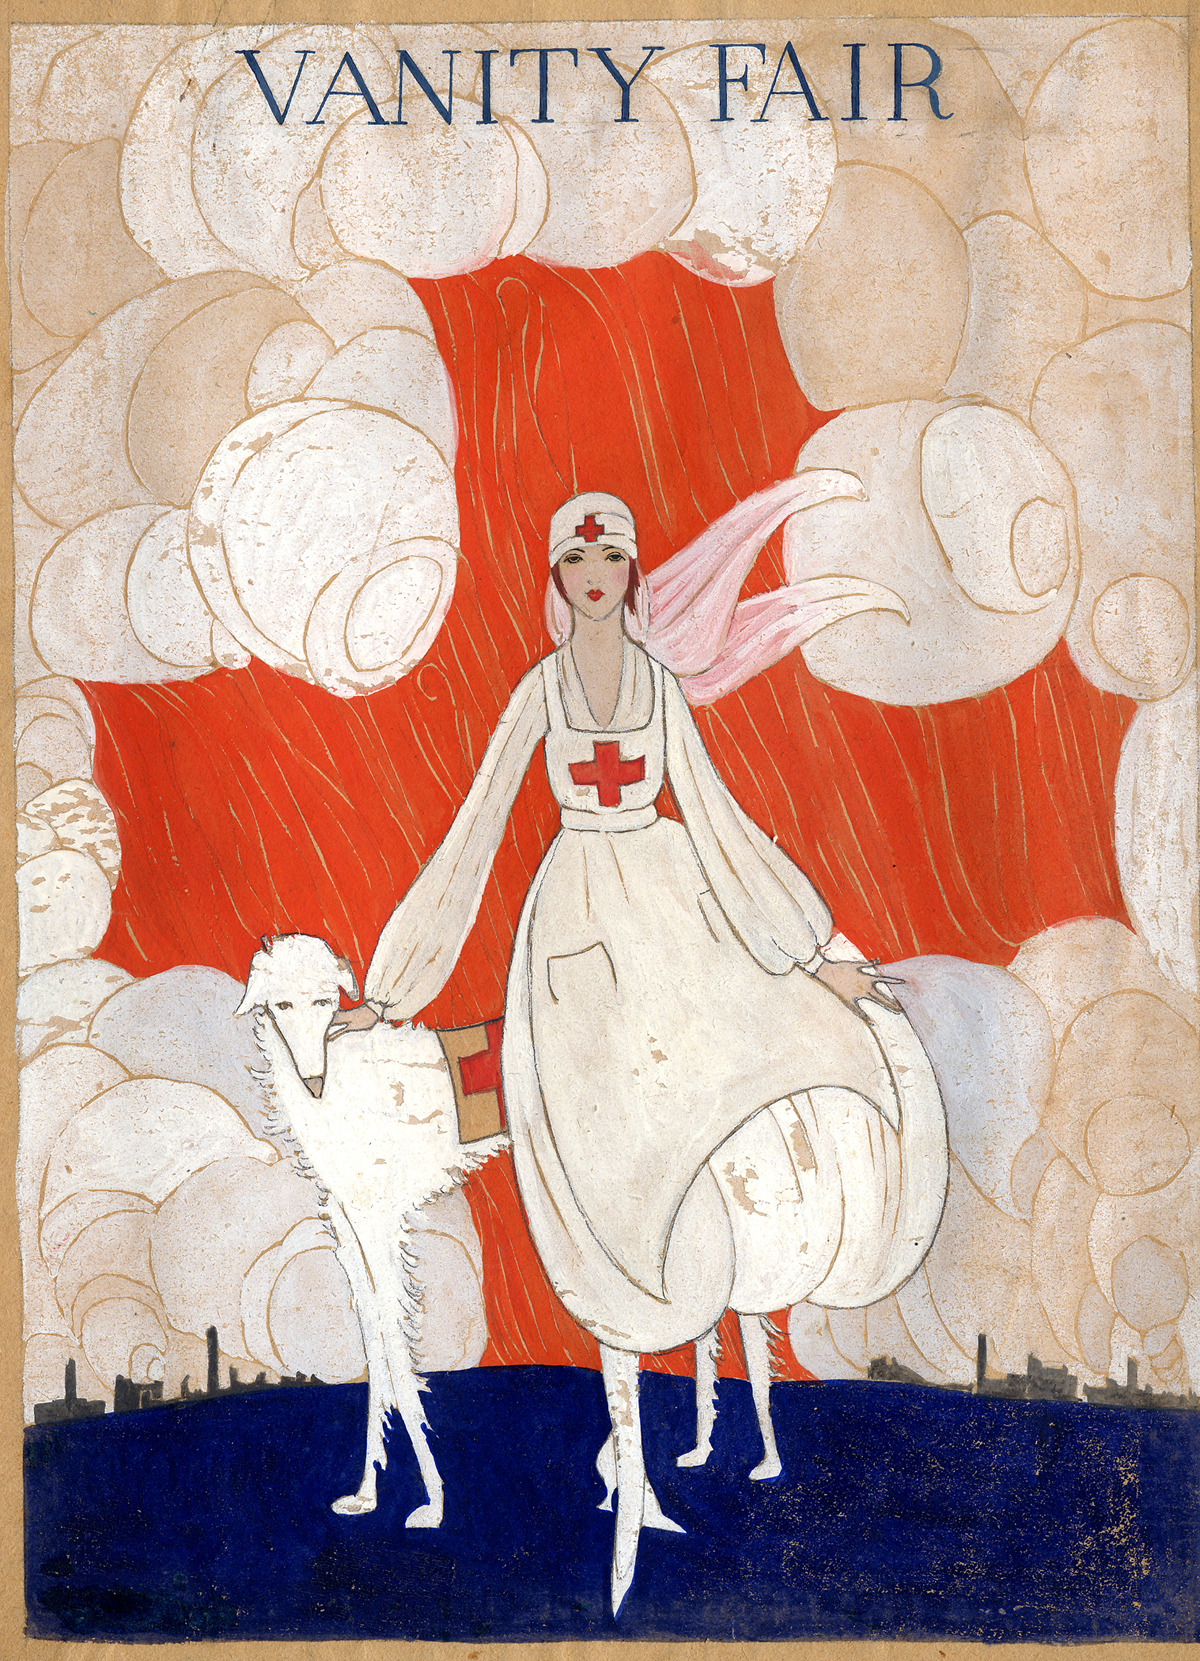 Gordon Conway "Red Cross Girl" illustration for "Vanity Fair," 1918